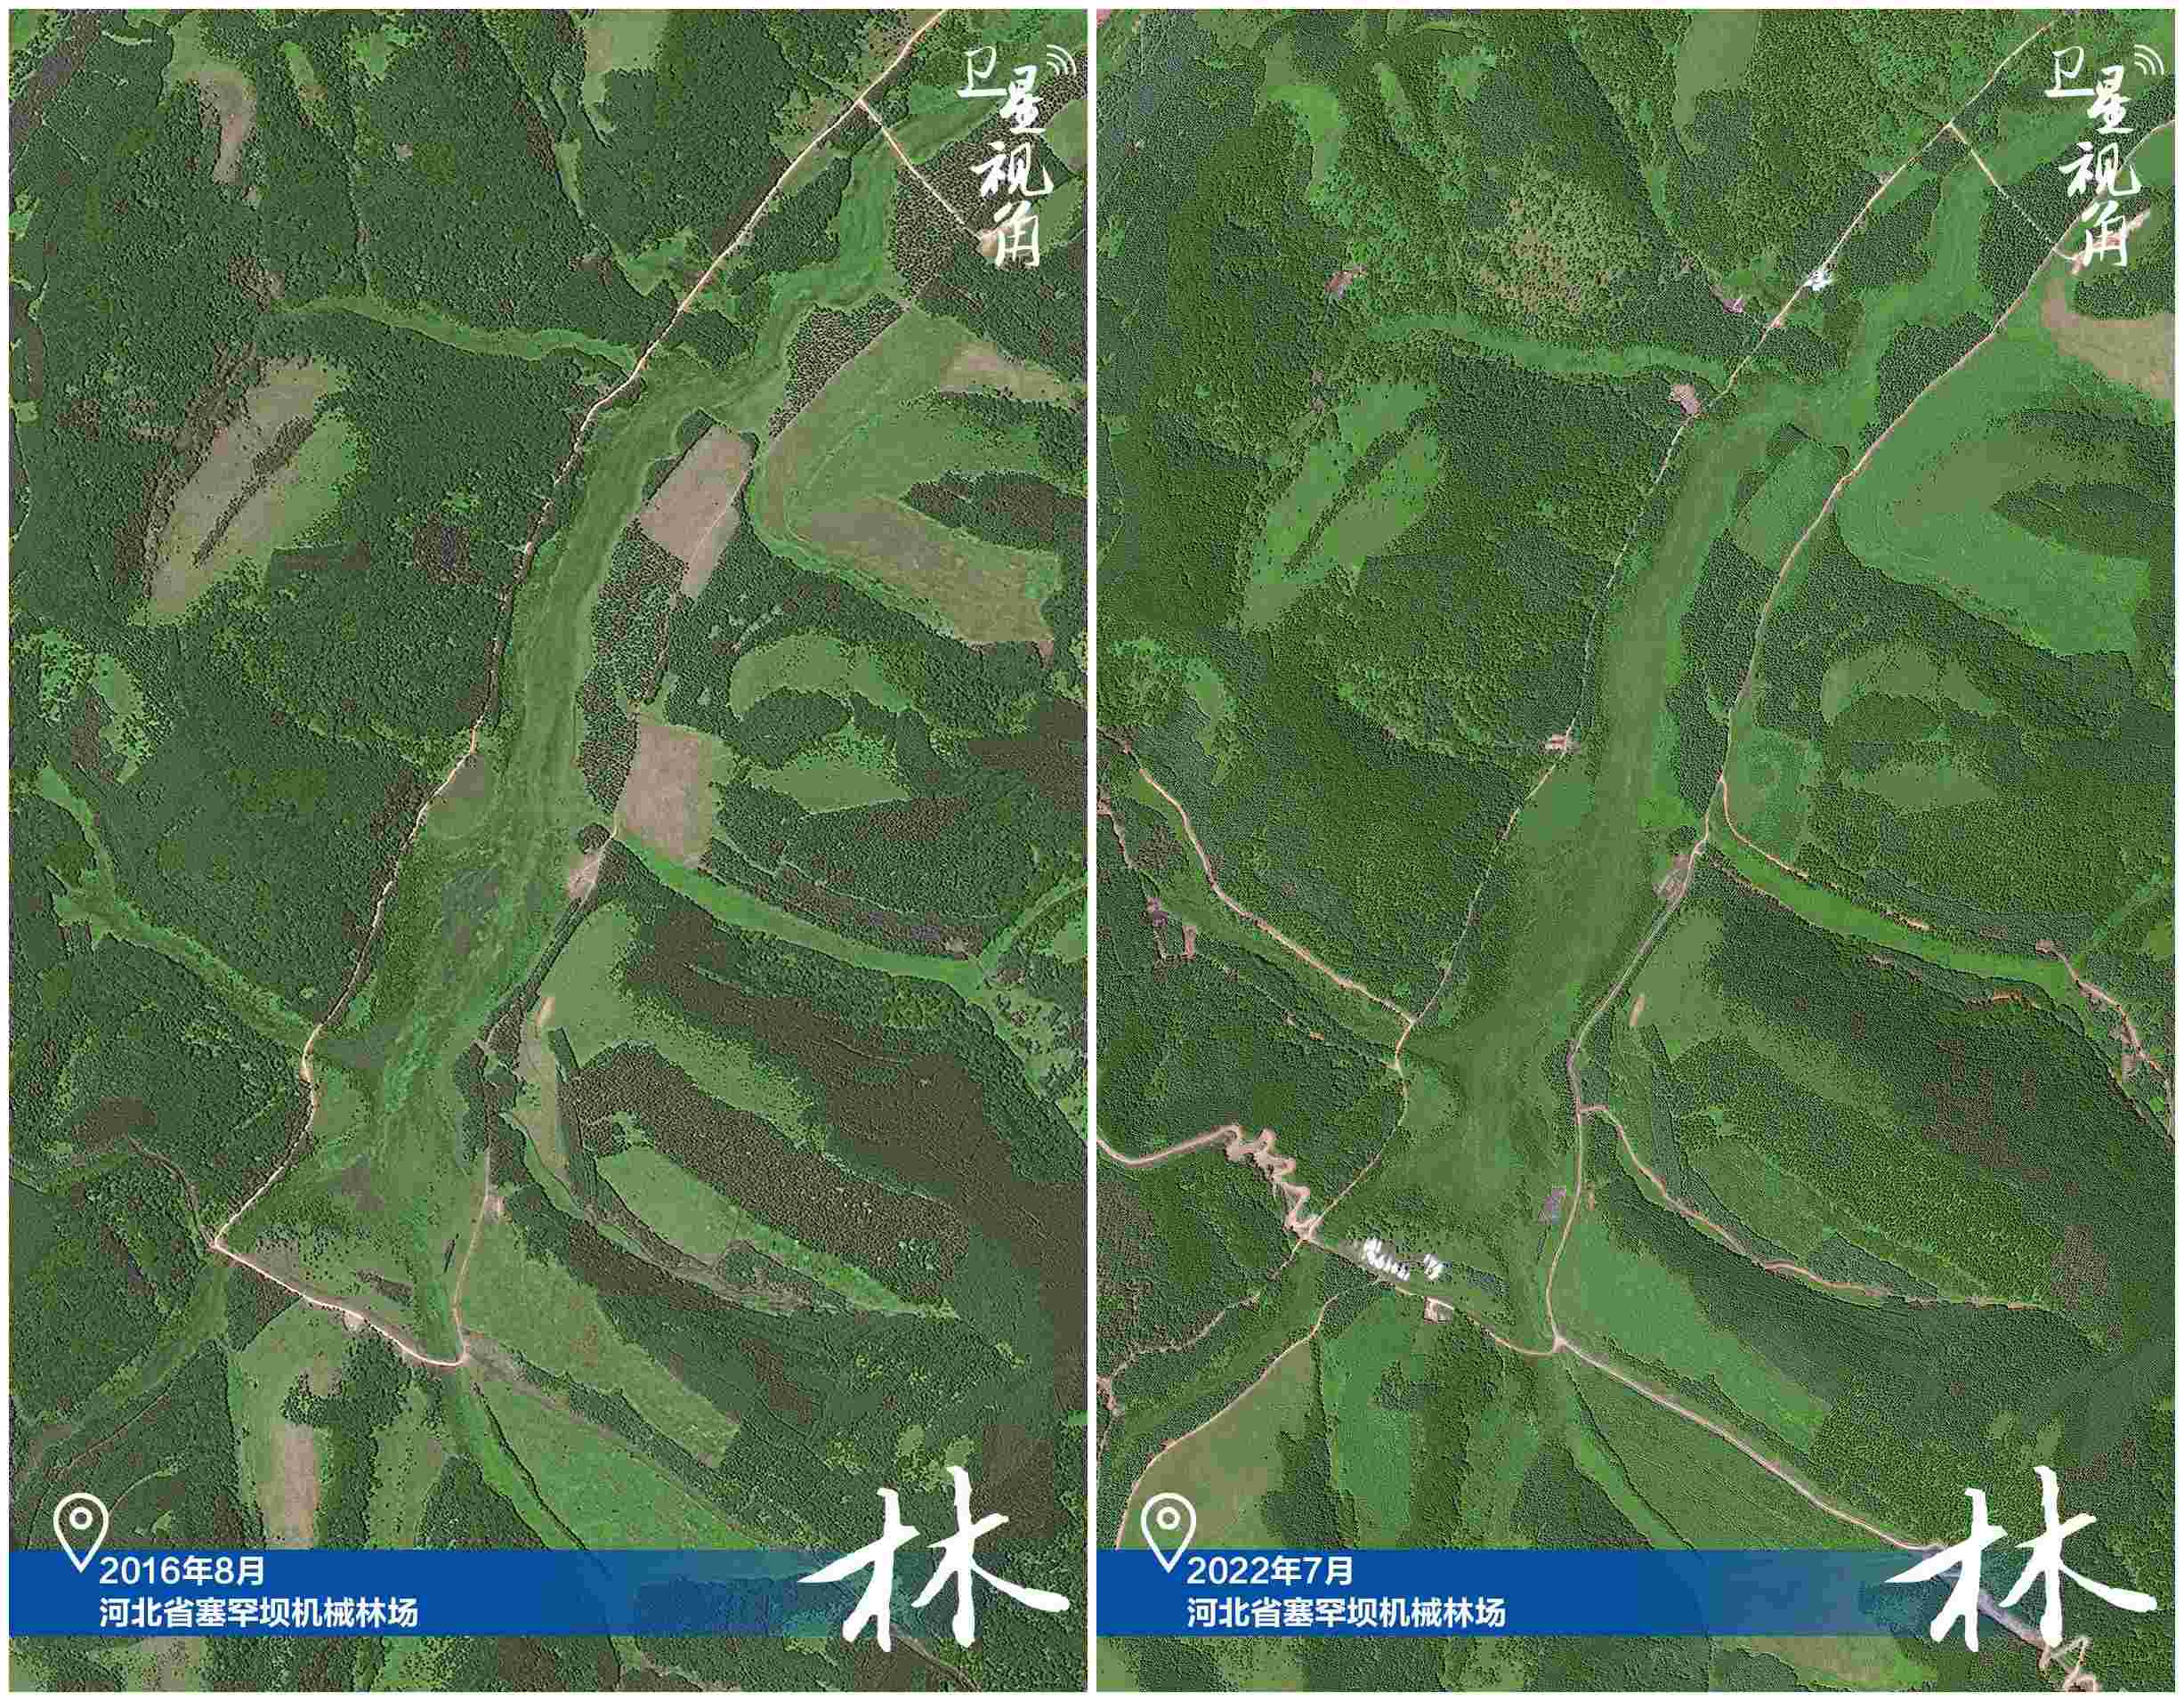 感受中国生态变迁,卫星视角丨跟着总书记的足迹生态|保护|总书记